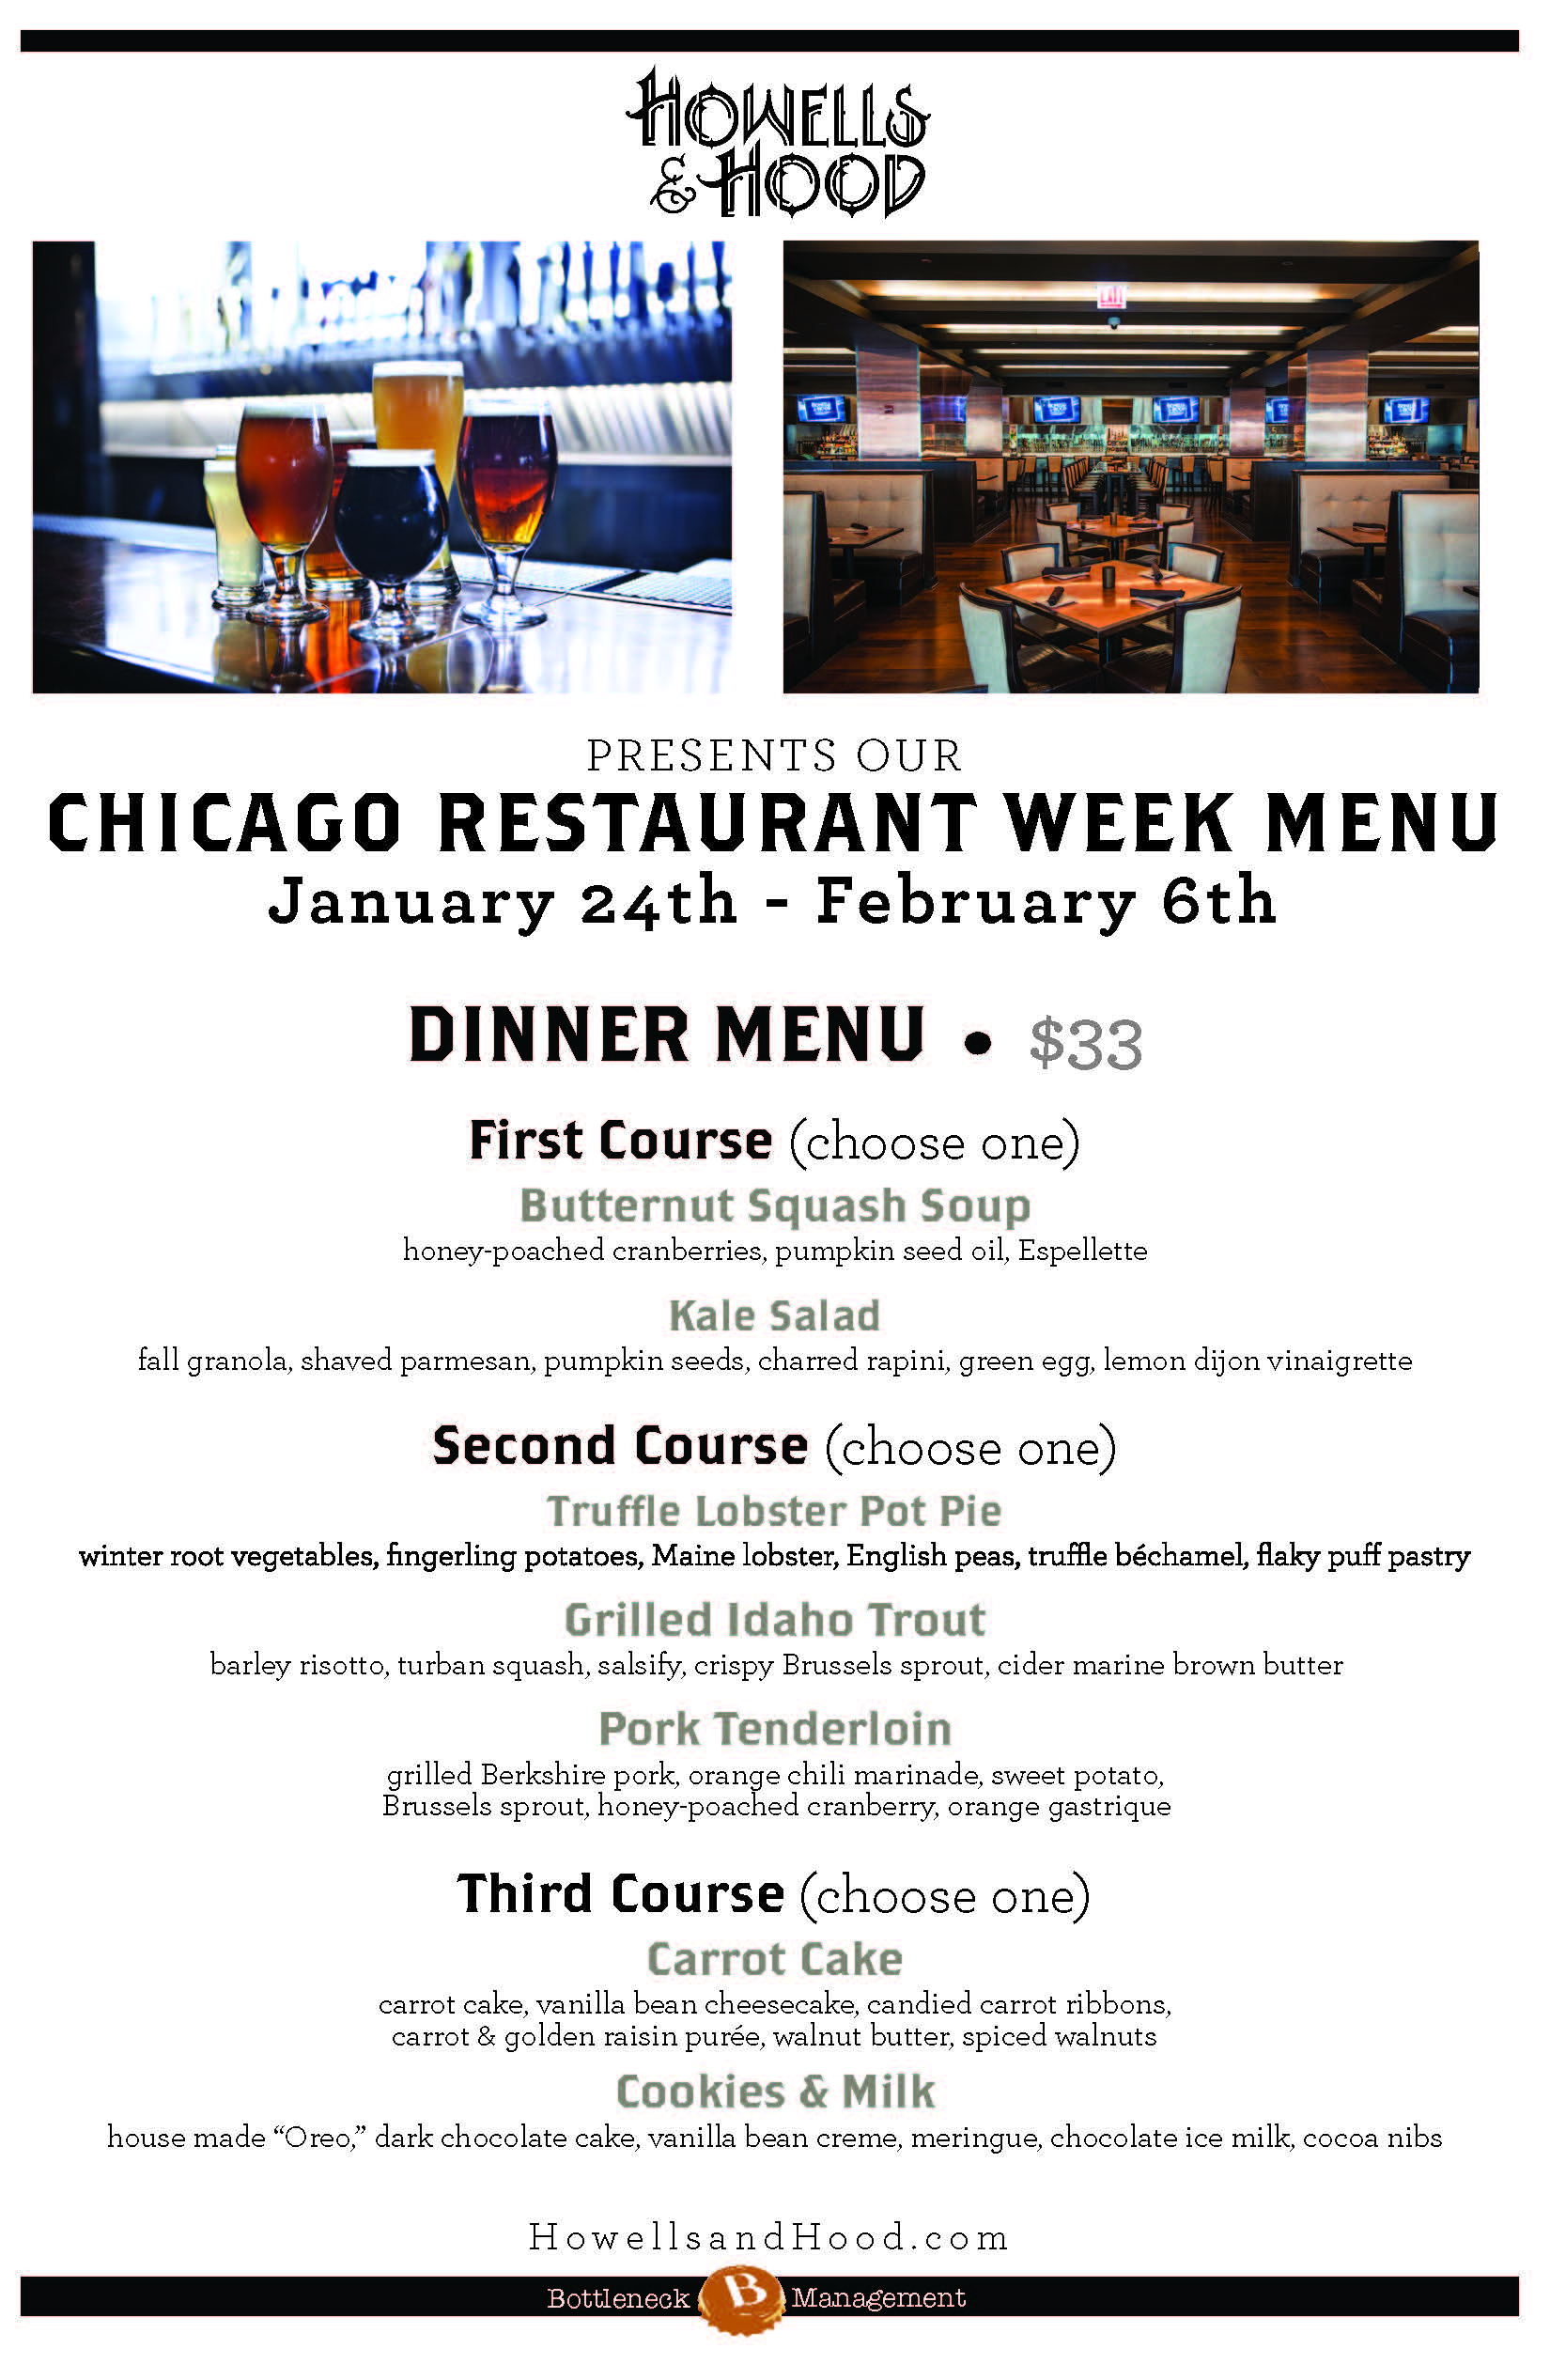 Chicago Restaurant Week Menus